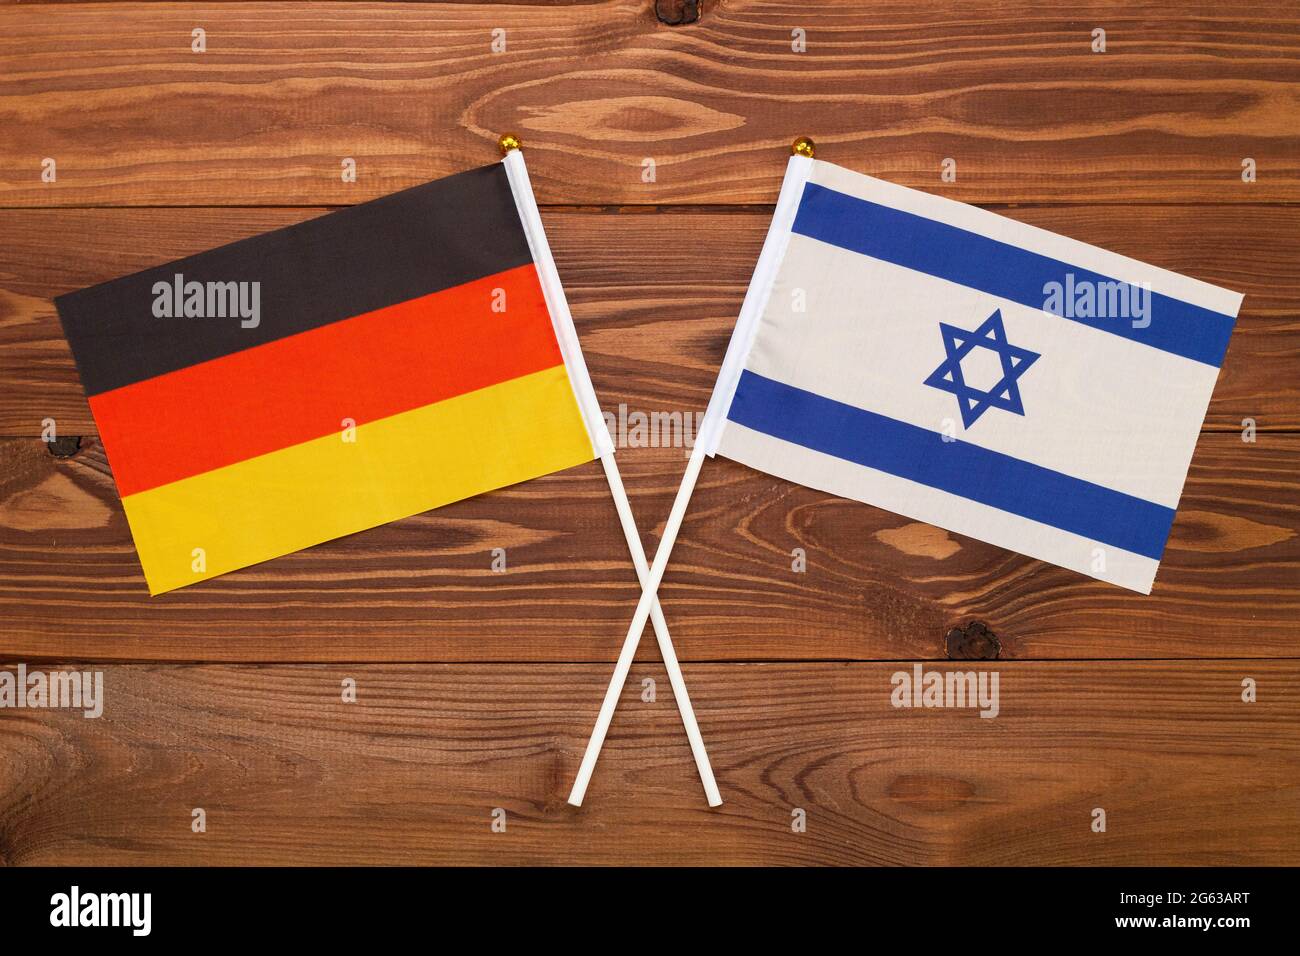 Die Flagge Deutschlands und die Flagge Israels kreuzten sich. Das Bild veranschaulicht die Beziehung zwischen den Ländern. Fotografie für Nachrichten Stockfoto